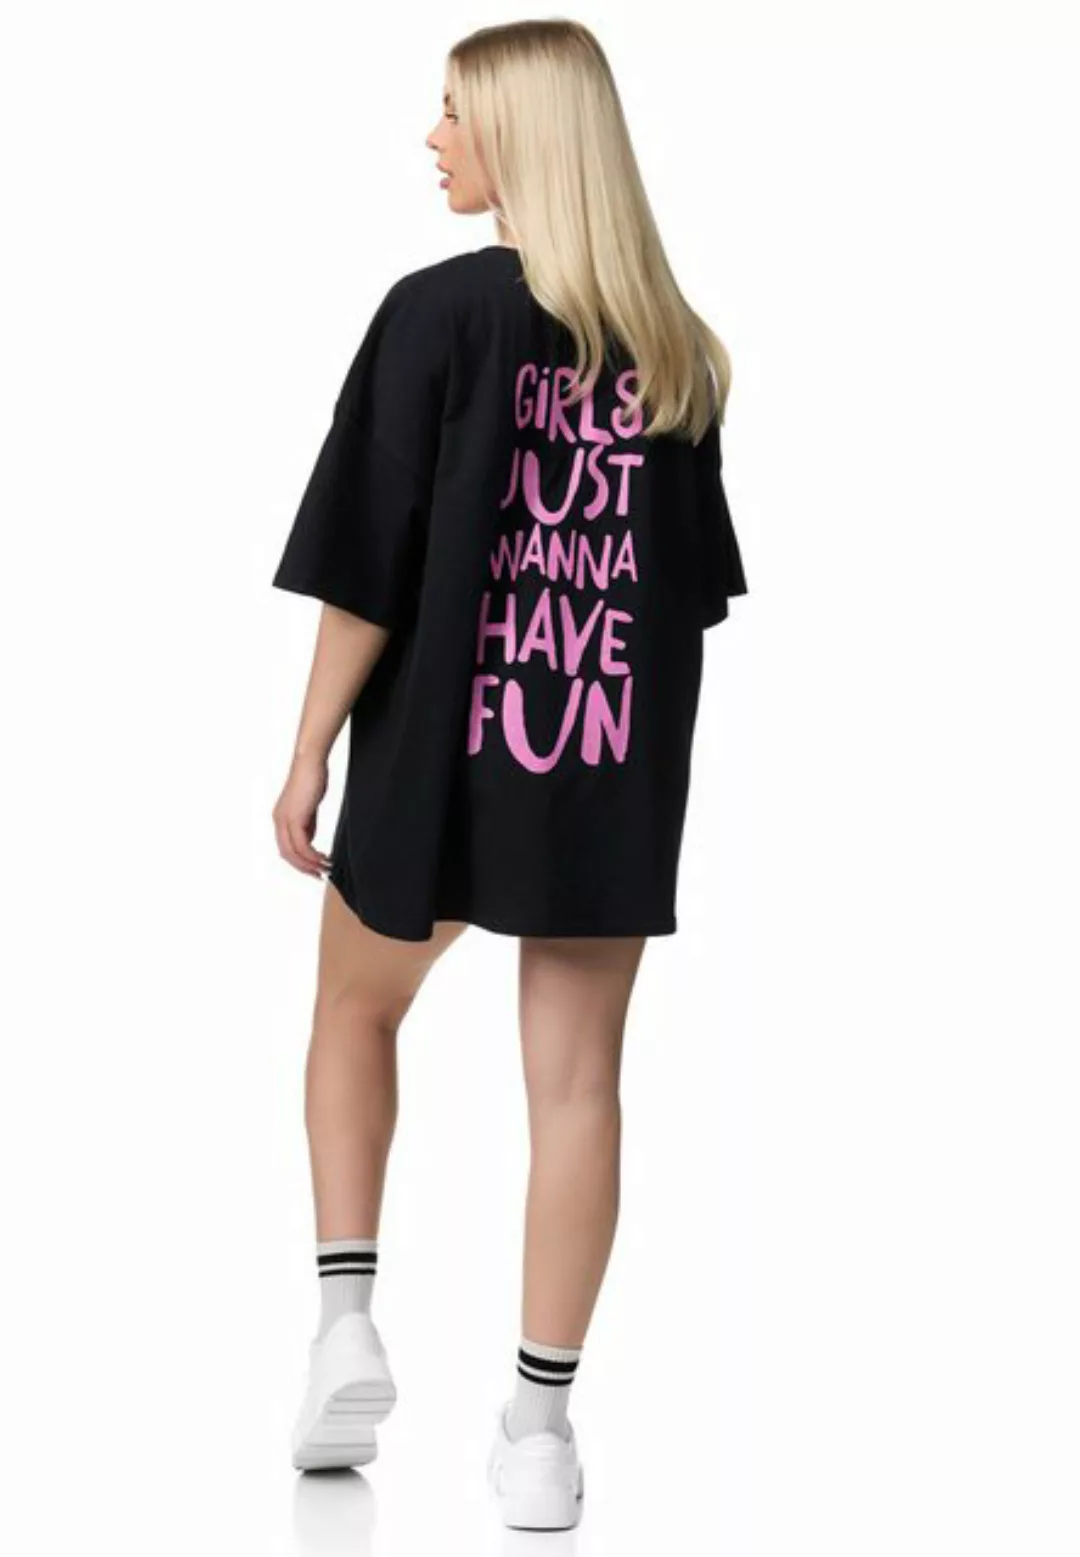 Worldclassca T-Shirt Worldclassca Oversized Girls Print T-Shirt lang Tee So günstig online kaufen